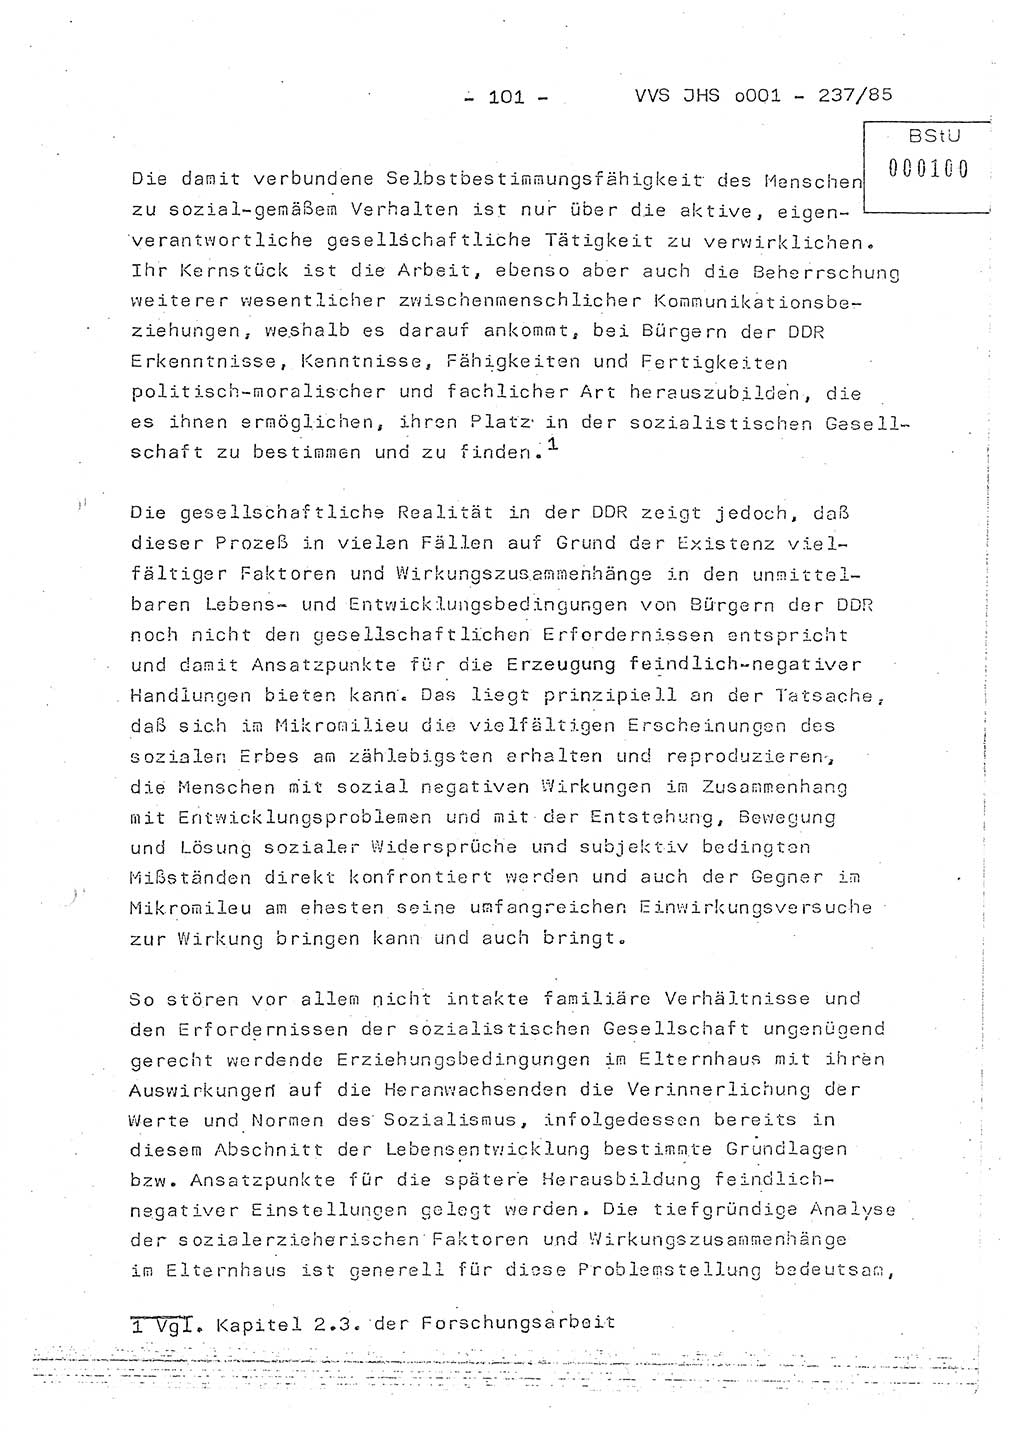 Dissertation Oberstleutnant Peter Jakulski (JHS), Oberstleutnat Christian Rudolph (HA Ⅸ), Major Horst Böttger (ZMD), Major Wolfgang Grüneberg (JHS), Major Albert Meutsch (JHS), Ministerium für Staatssicherheit (MfS) [Deutsche Demokratische Republik (DDR)], Juristische Hochschule (JHS), Vertrauliche Verschlußsache (VVS) o001-237/85, Potsdam 1985, Seite 101 (Diss. MfS DDR JHS VVS o001-237/85 1985, S. 101)